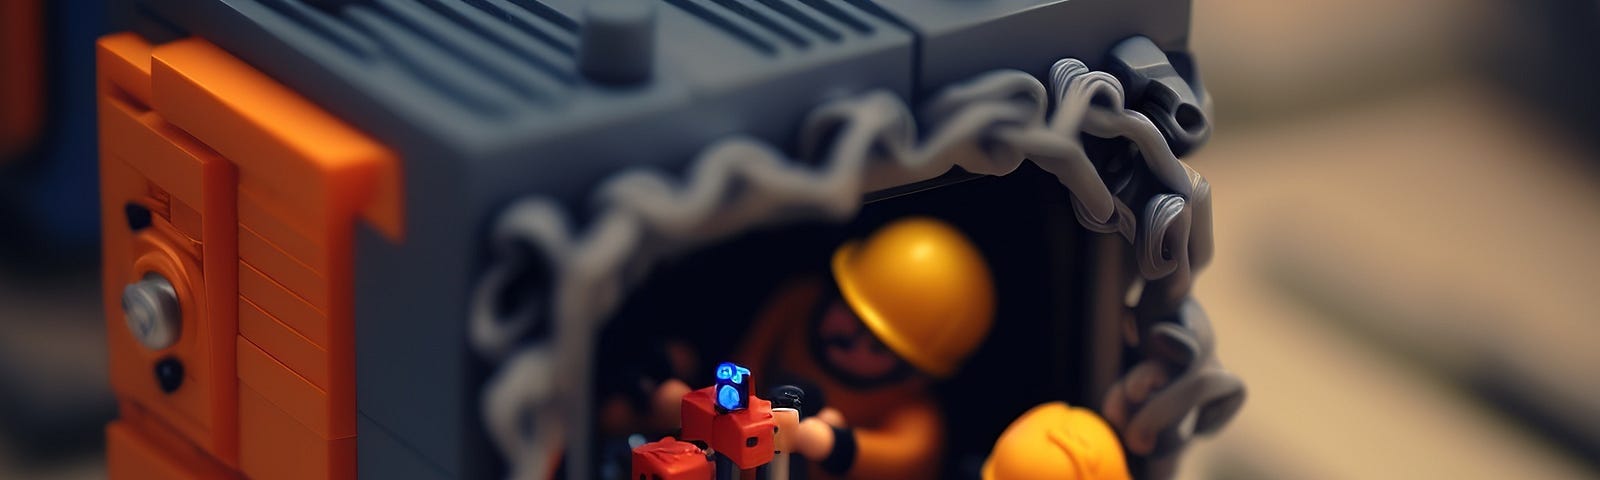 Immagine decorativa con omini stile Lego che collaborano per la messa a punto di processori